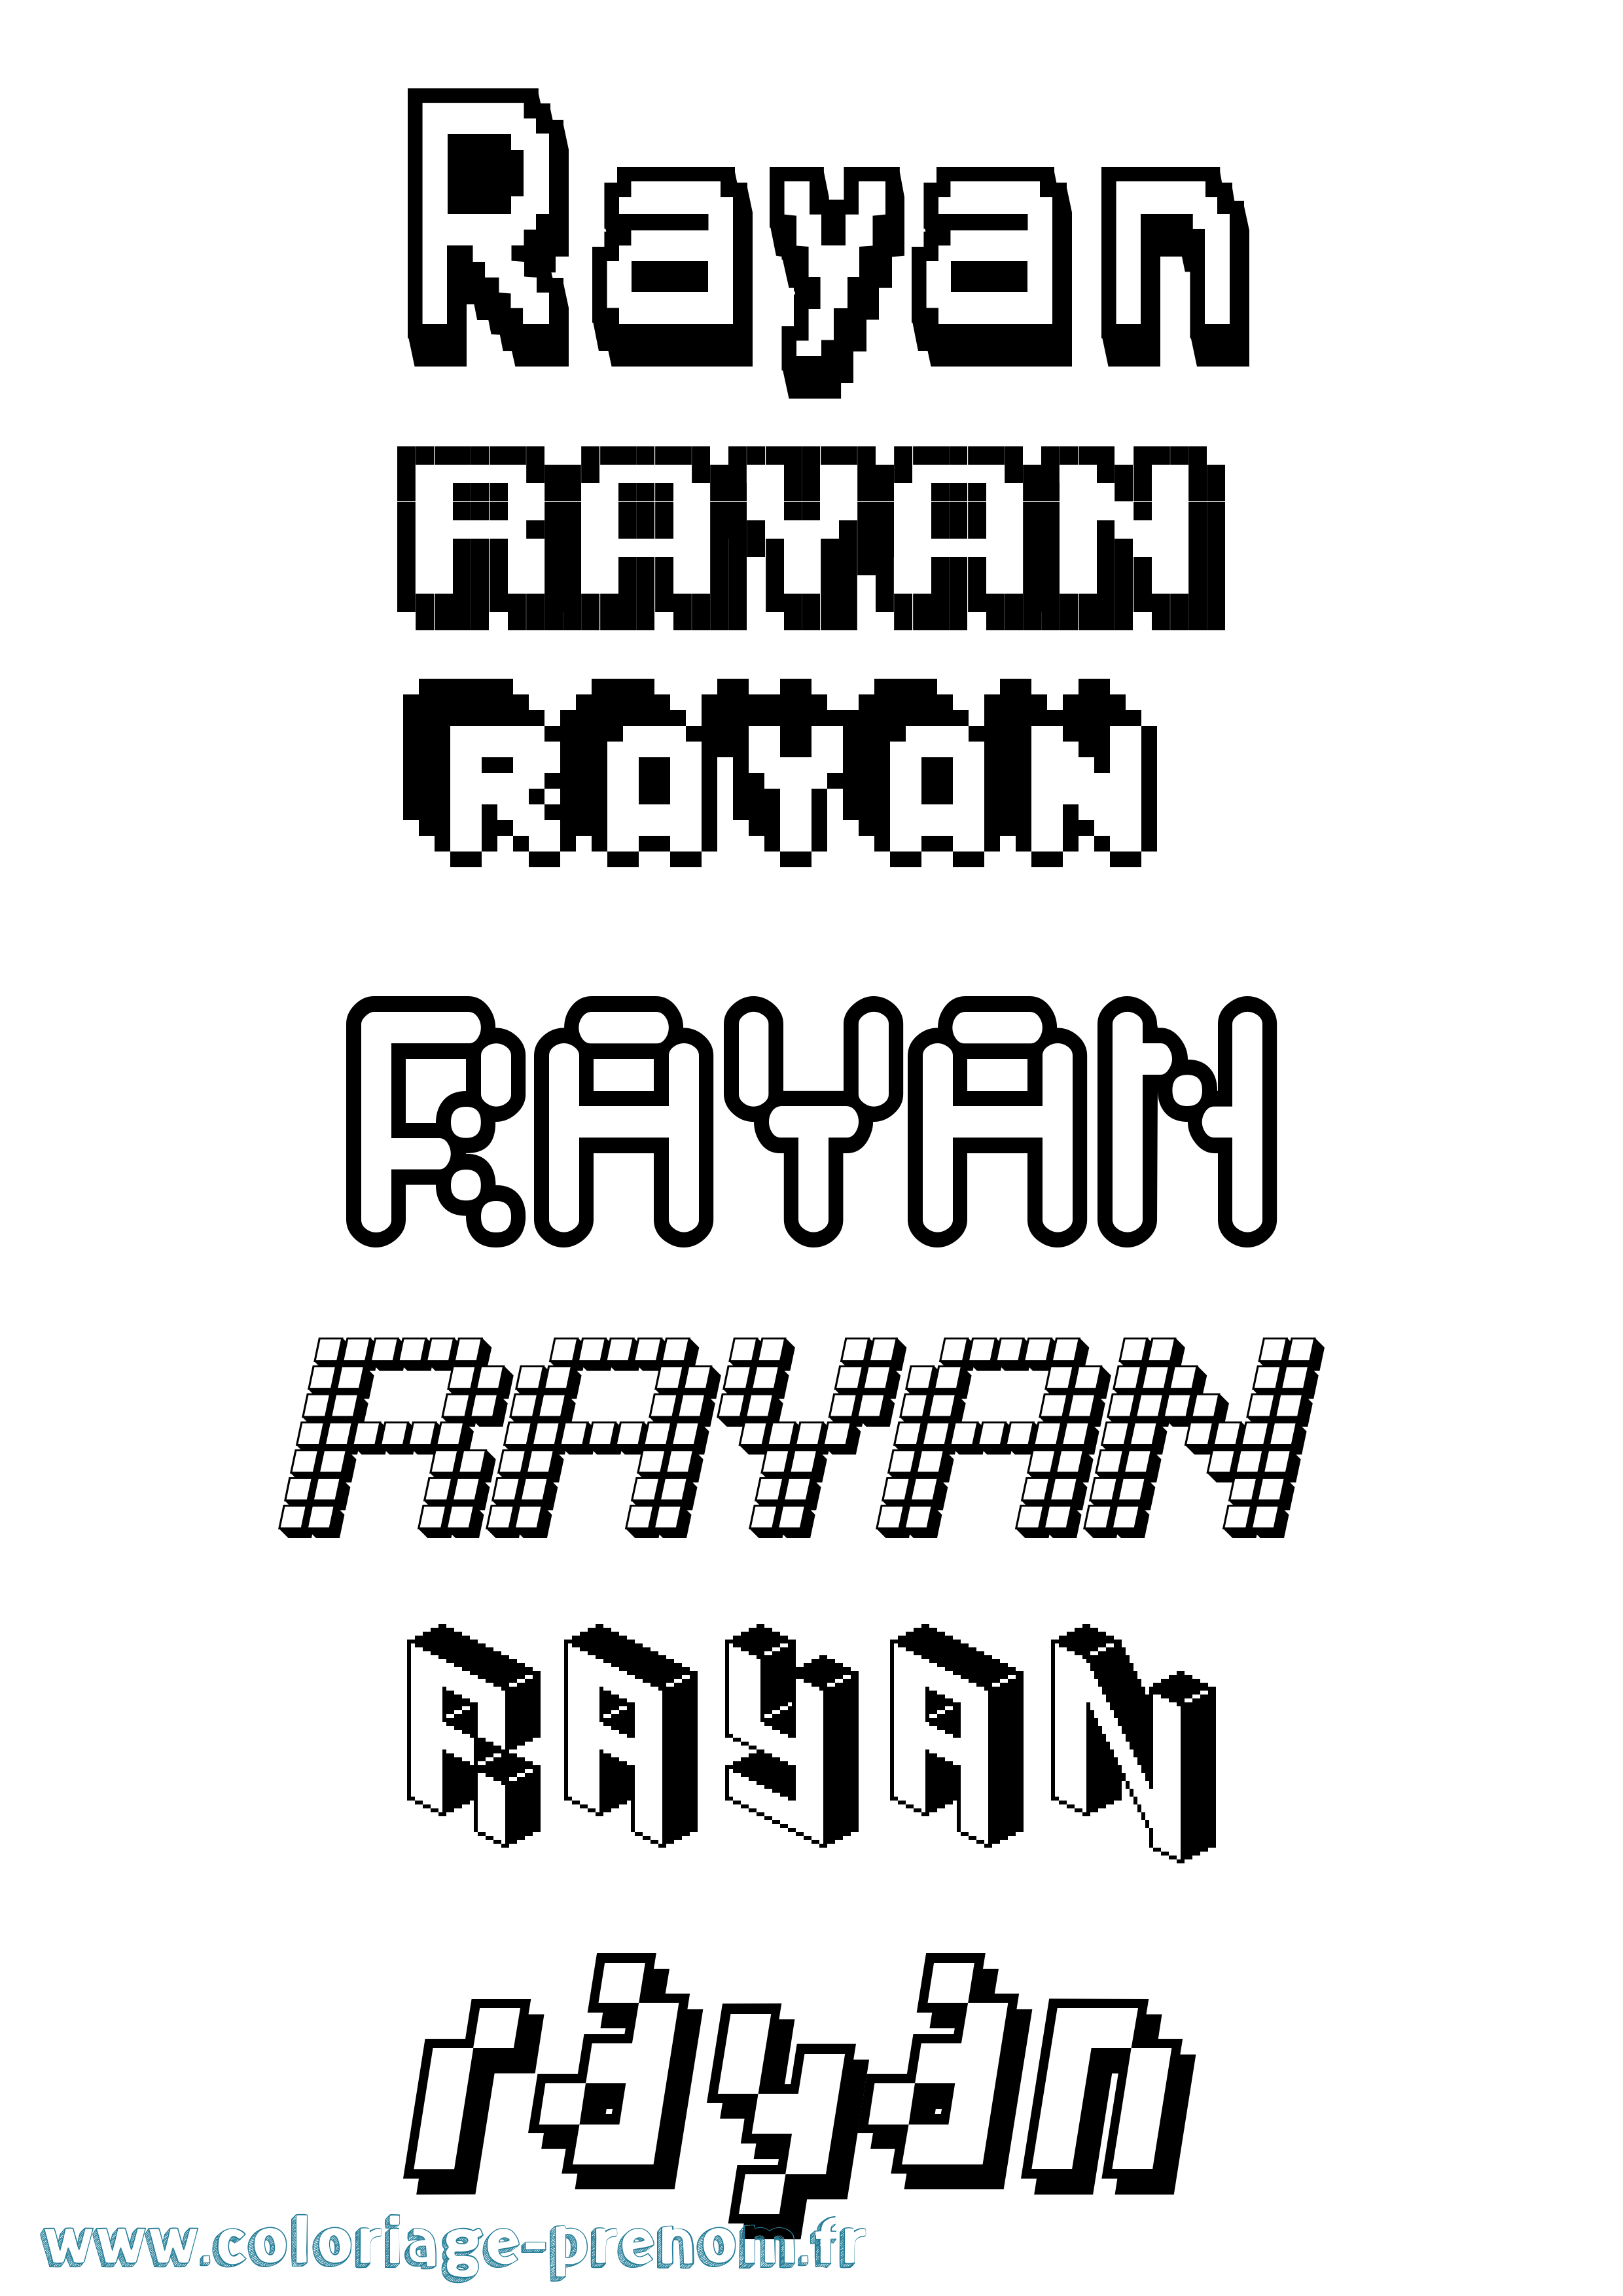 Coloriage prénom Rayan